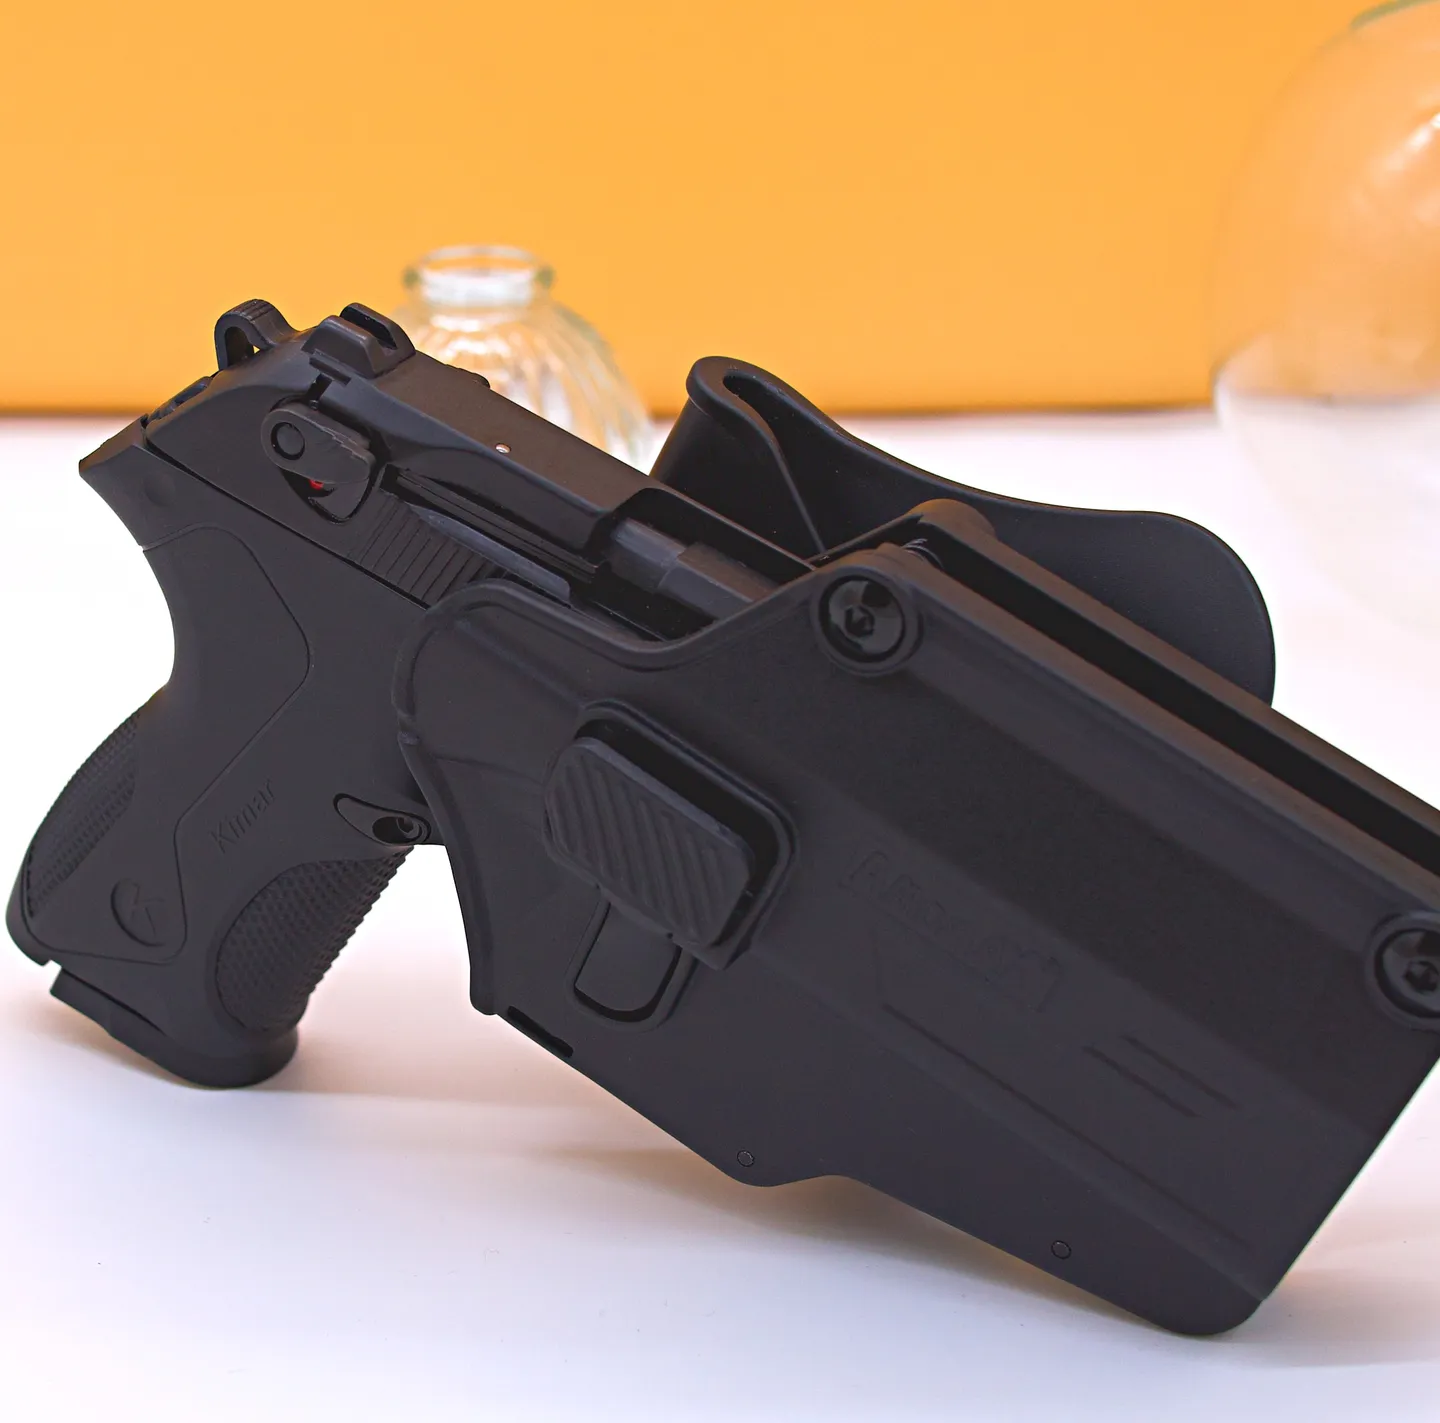 Zubehör und Ausrüstung - Holster für Mehrzweckhandfeuerwaffen von Amomax – kompatibel mit verschiedenen Plattformen